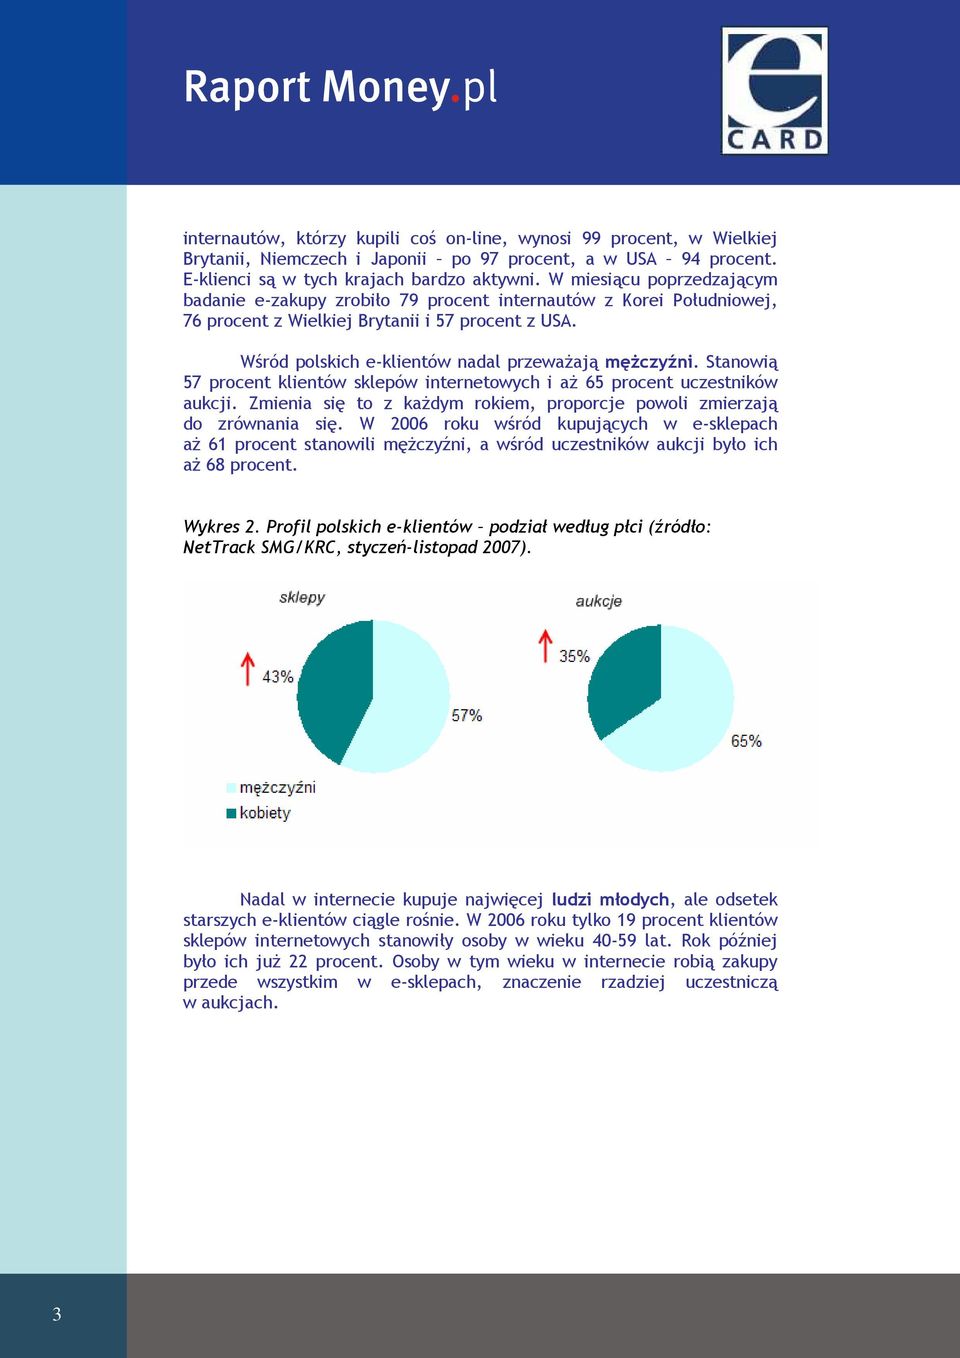 Wśród polskich e-klientów nadal przewaŝają męŝczyźni. Stanowią 57 procent klientów sklepów internetowych i aŝ 65 procent uczestników aukcji.